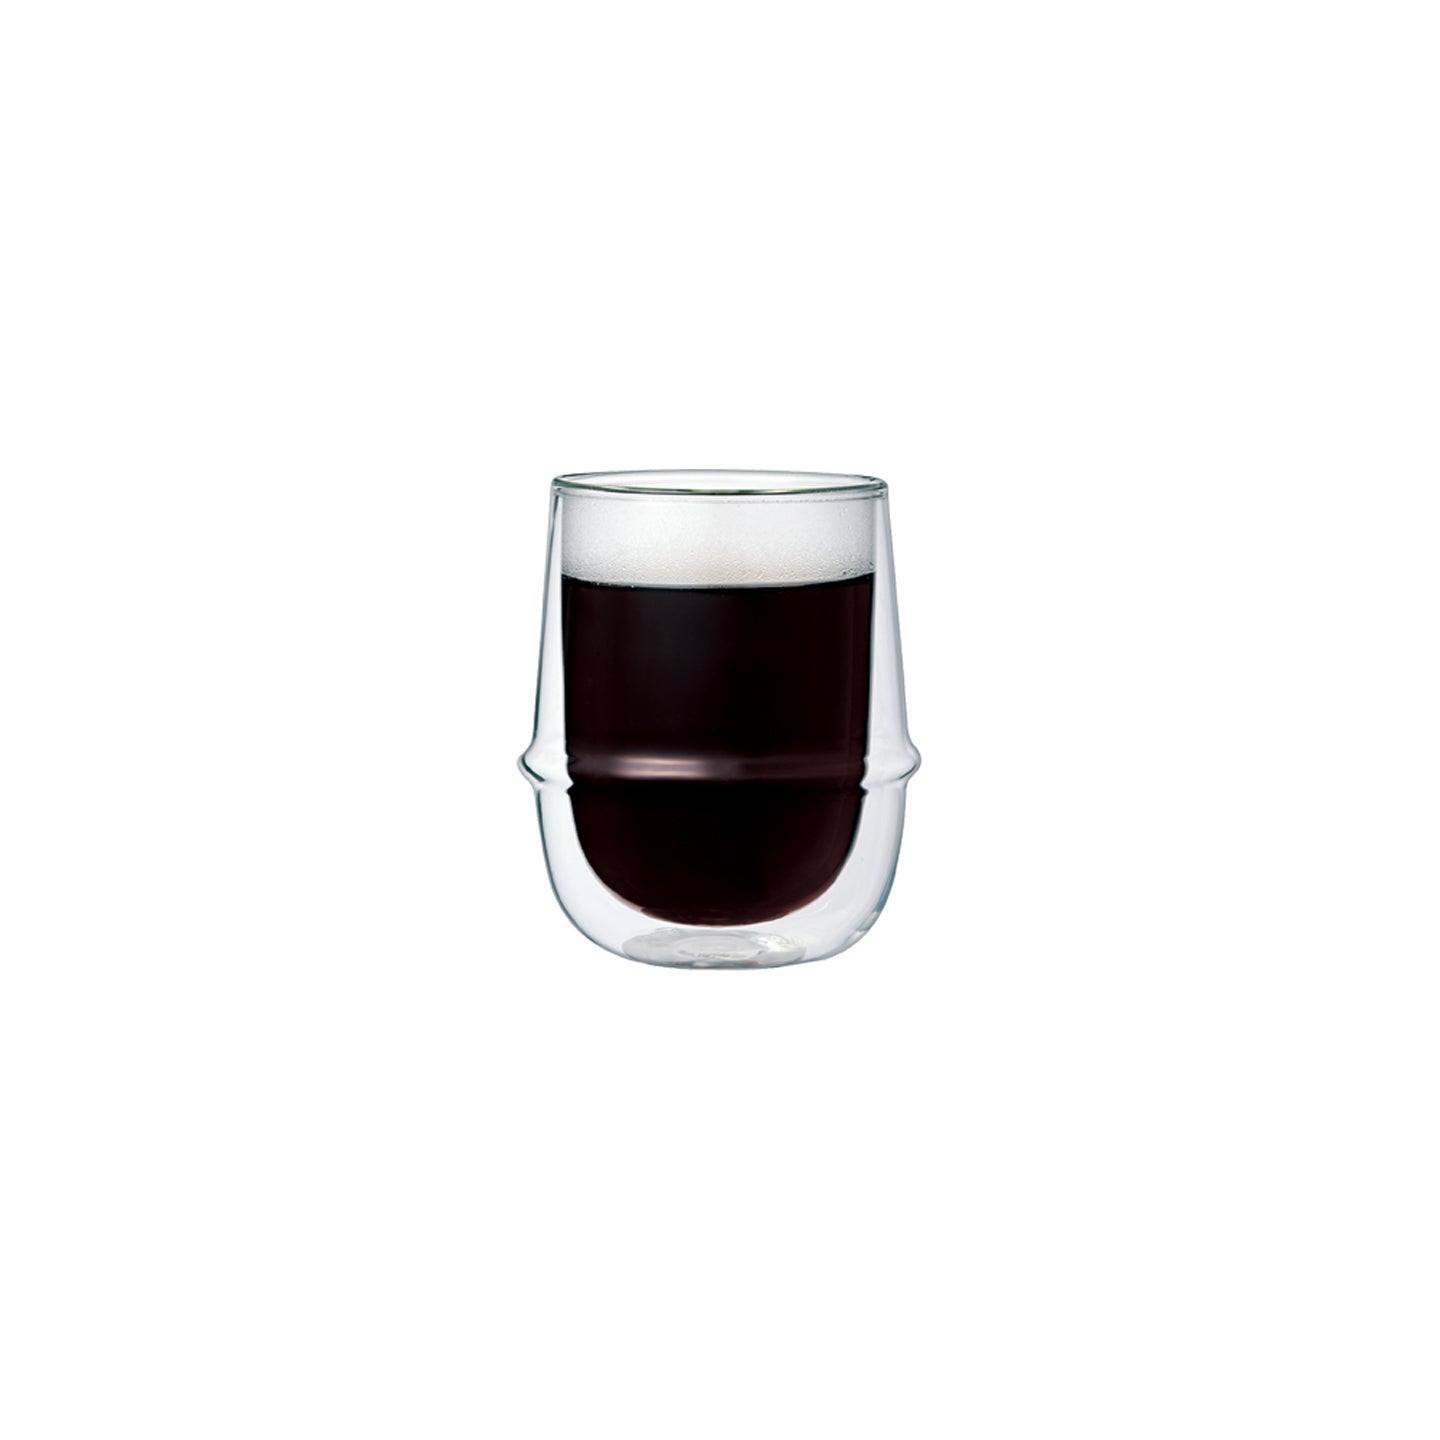 Kinto Kronos Double Wall Espresso Cup 80ml